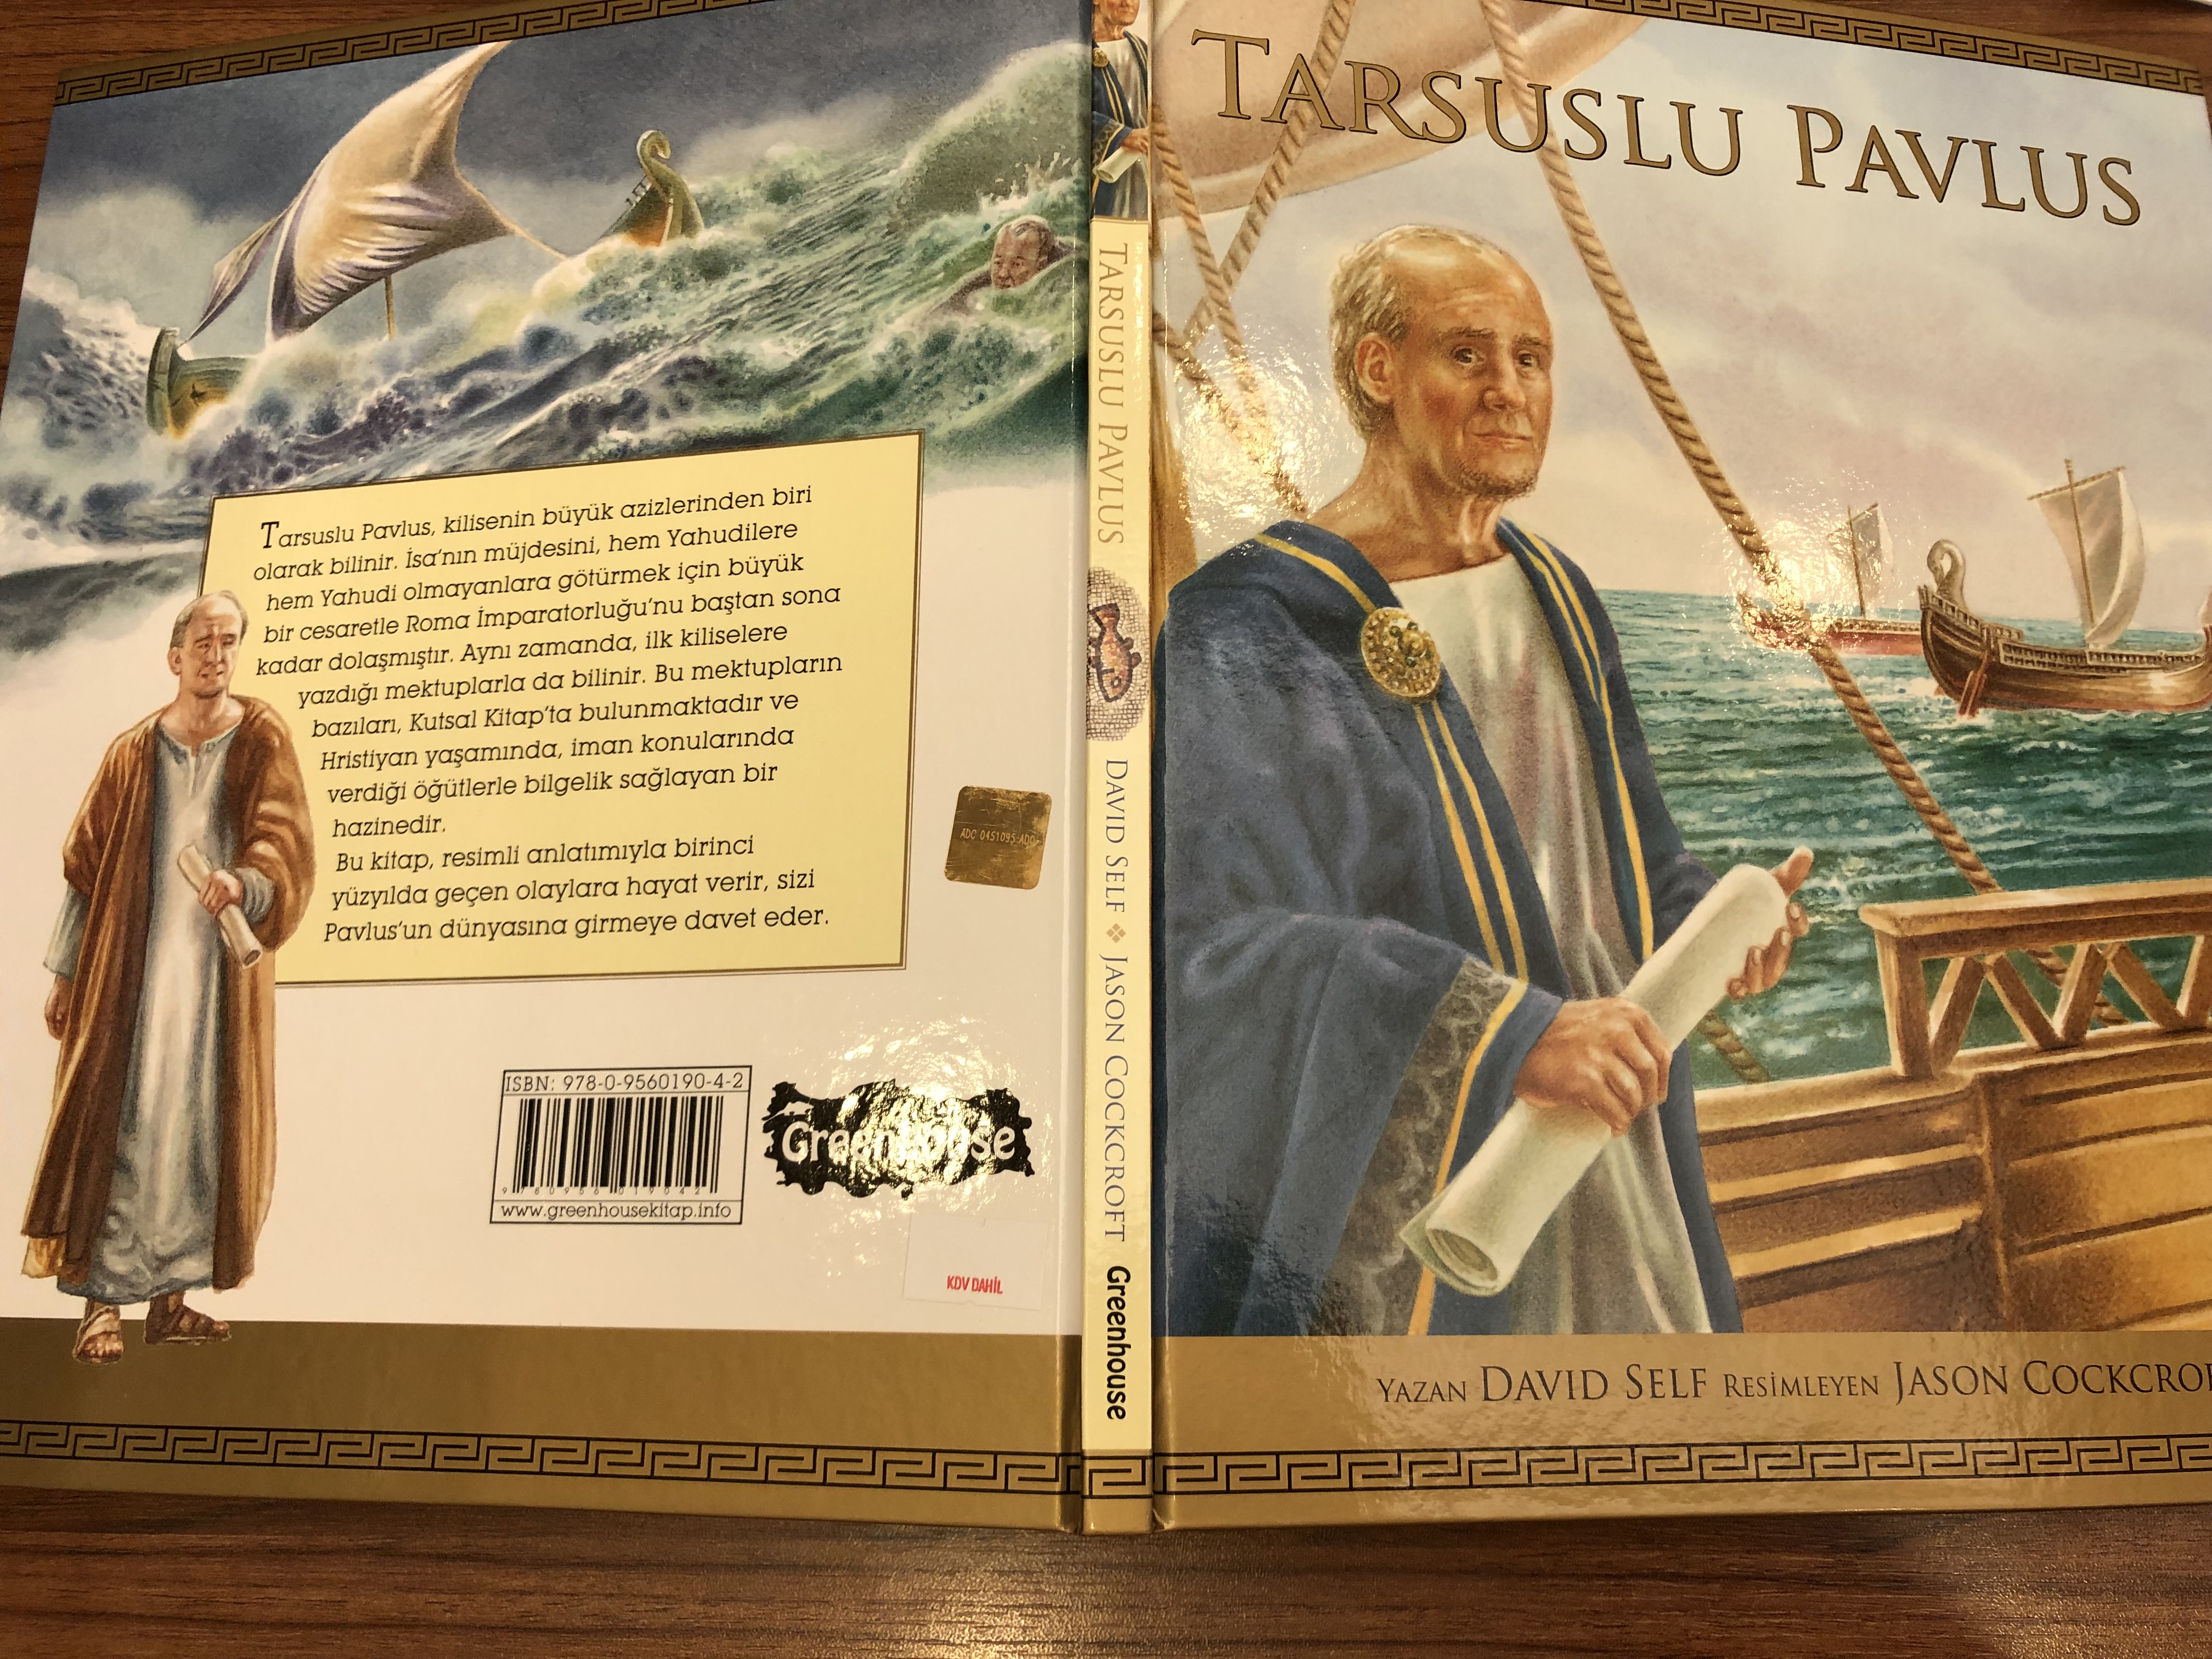 tarsuslu-pavlus-saint-paul-turkish-language-edition-by-david-self-16-.jpg